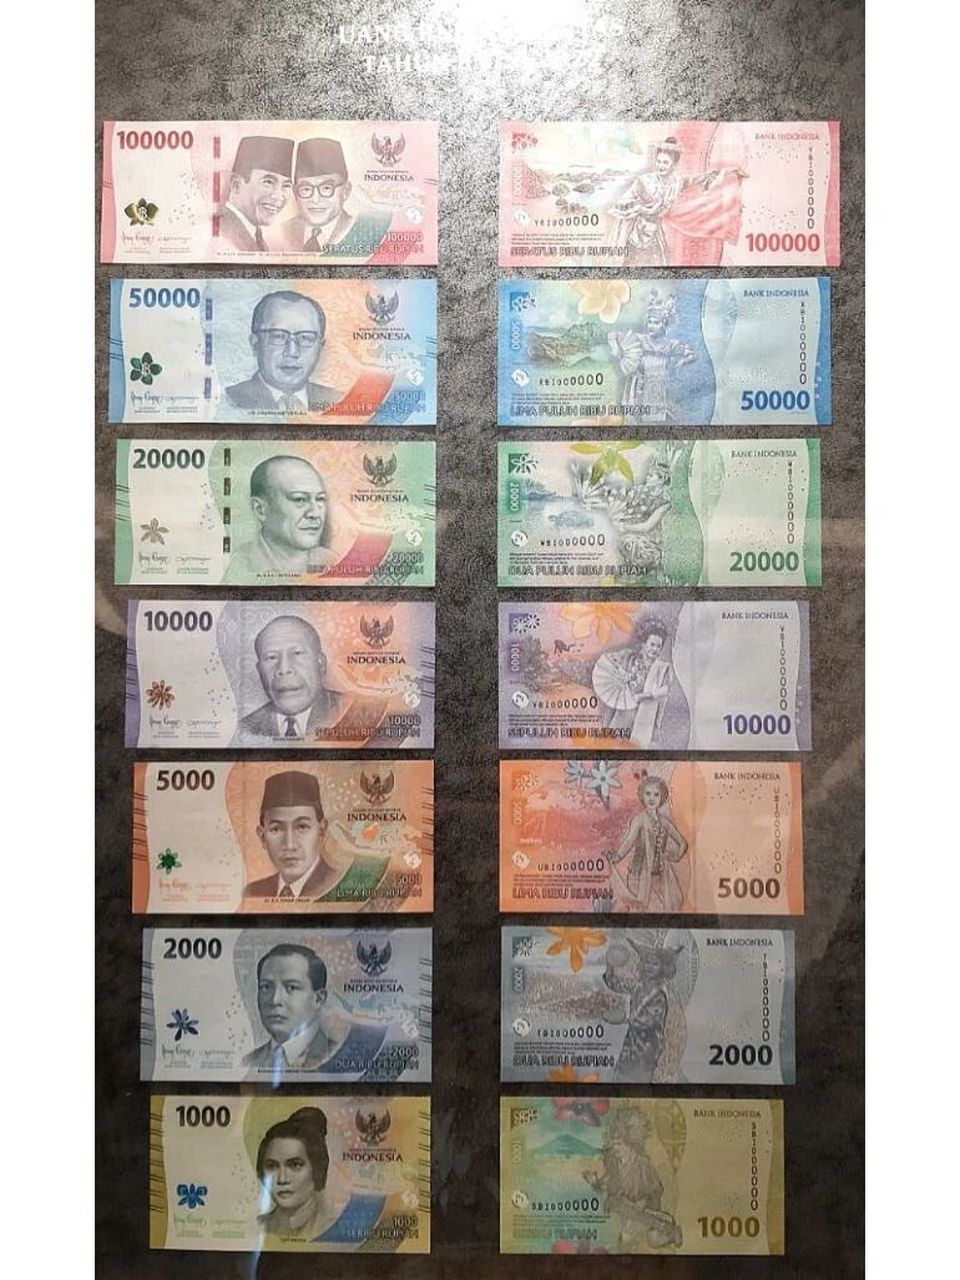 新版印尼盾实物图 照片由印尼网友提供